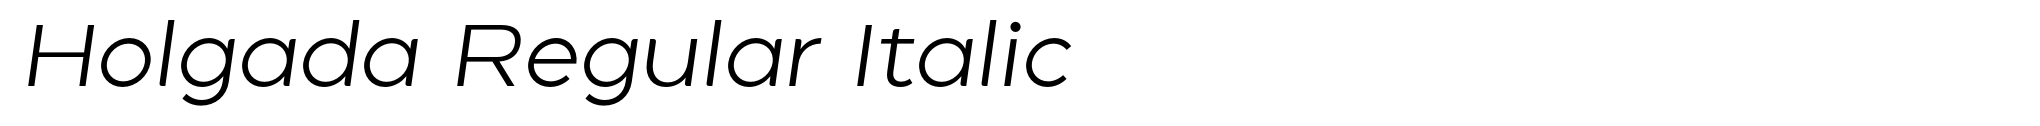 Holgada Regular Italic image